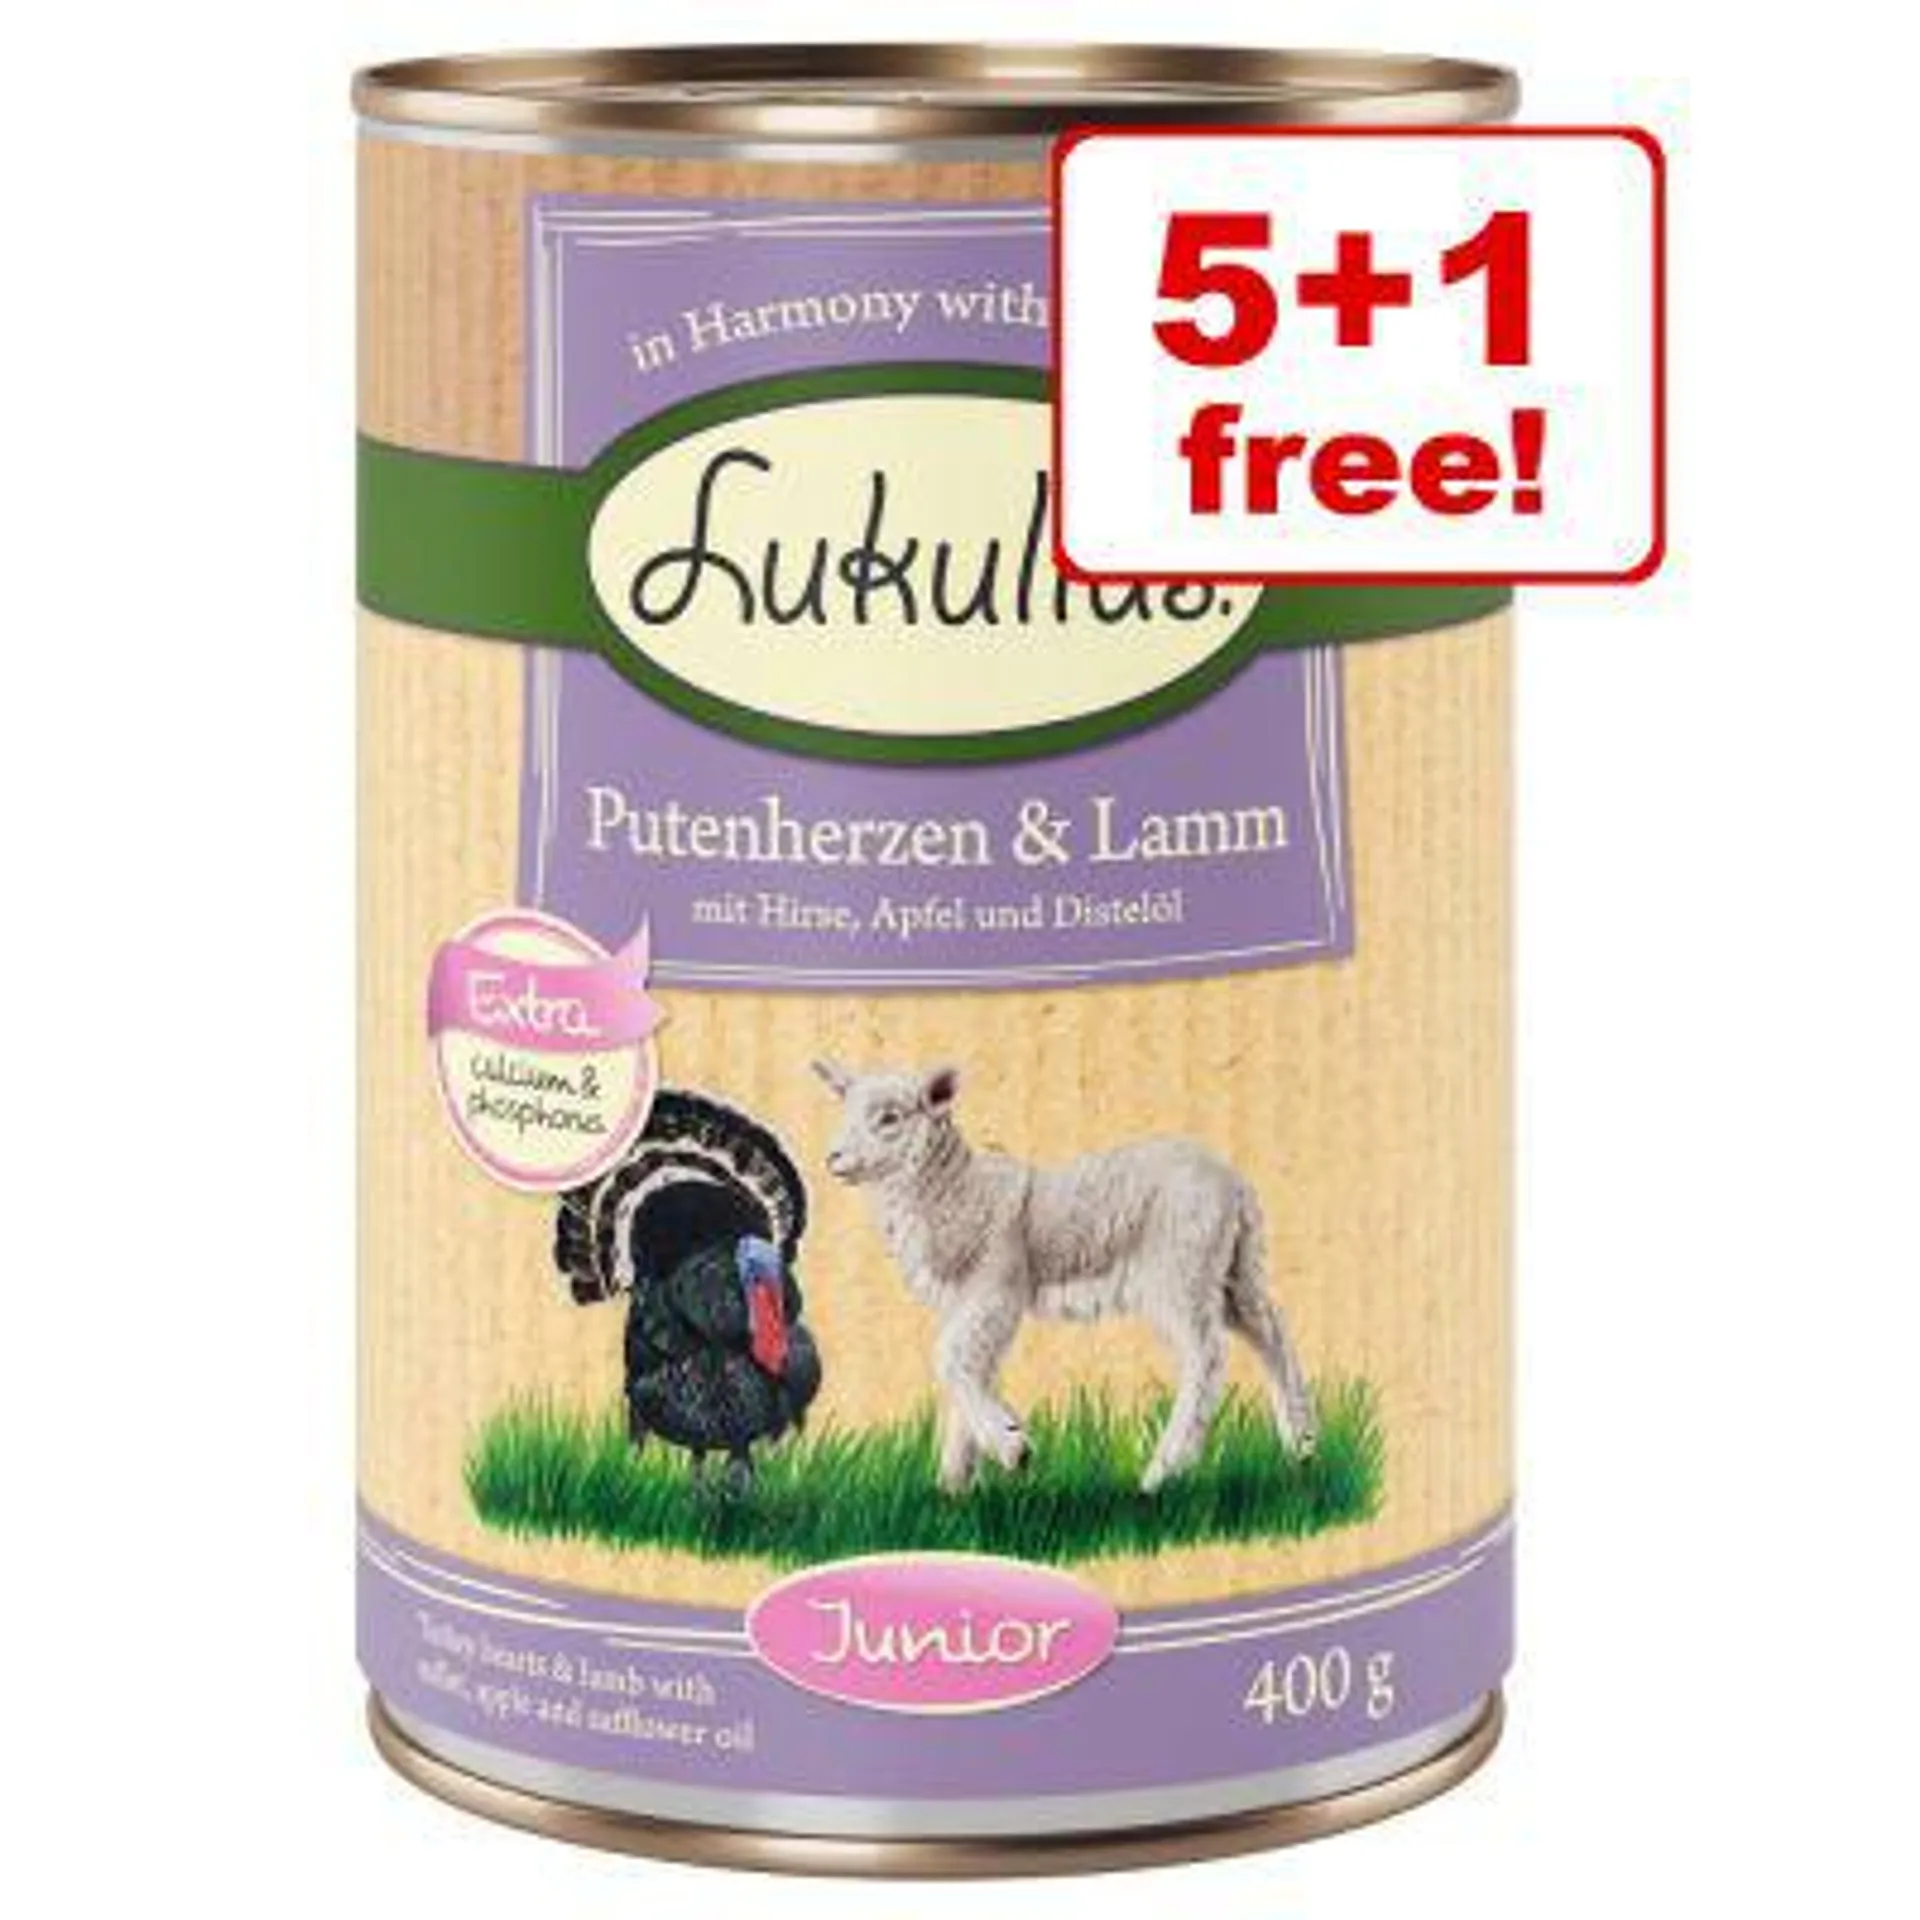 6 x 400g Lukullus Junior Wet Dog Food - 5 + 1 Free!*